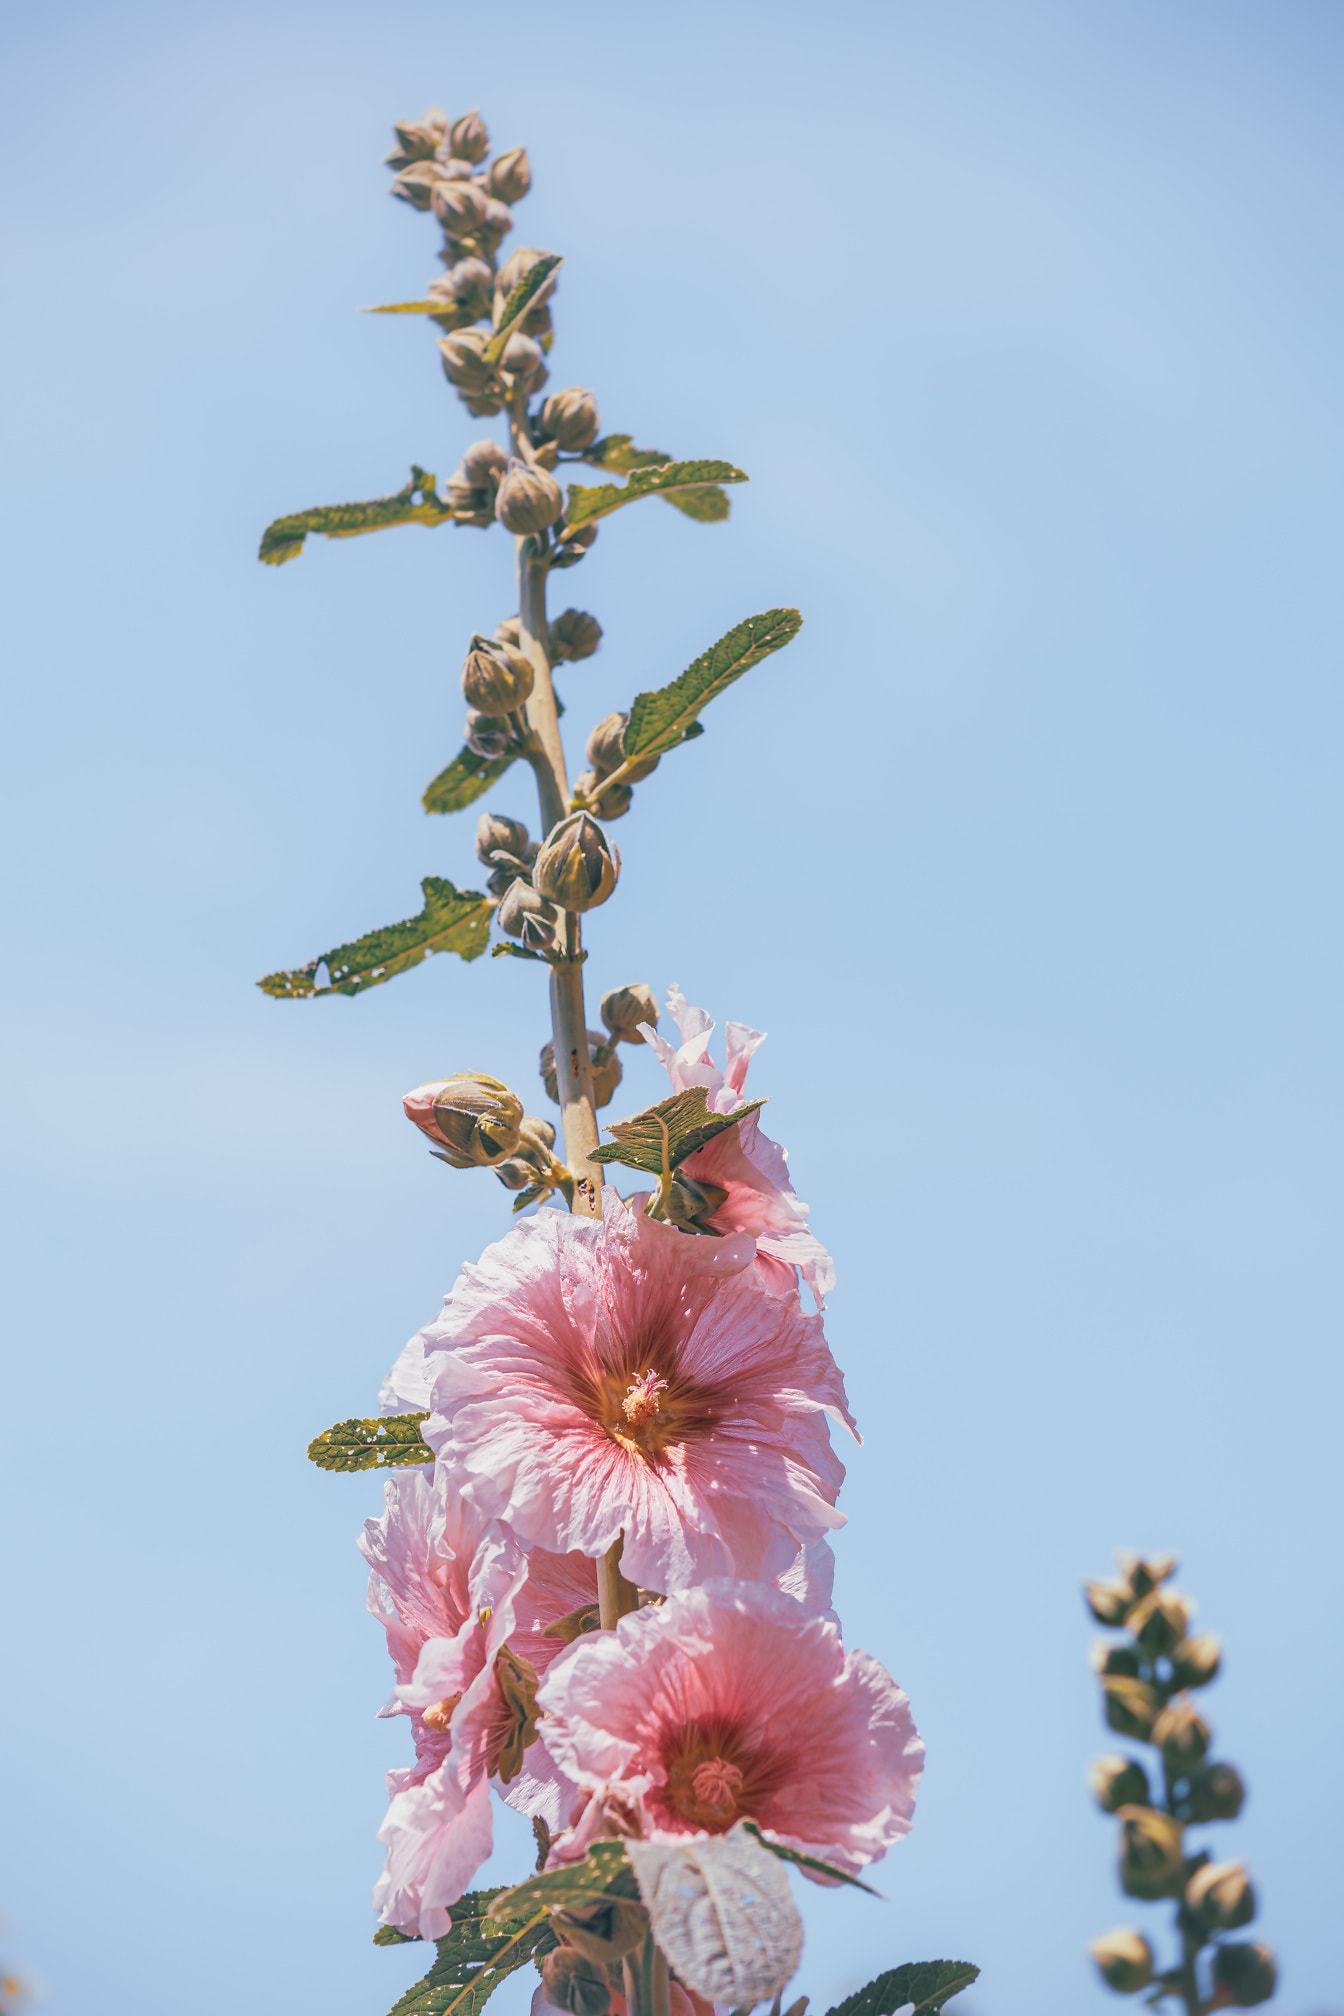 Leuchtend rosafarbene Blütenblätter von Stockrosenblüten (Alcea rosea) mit blauem Himmel als Hintergrund